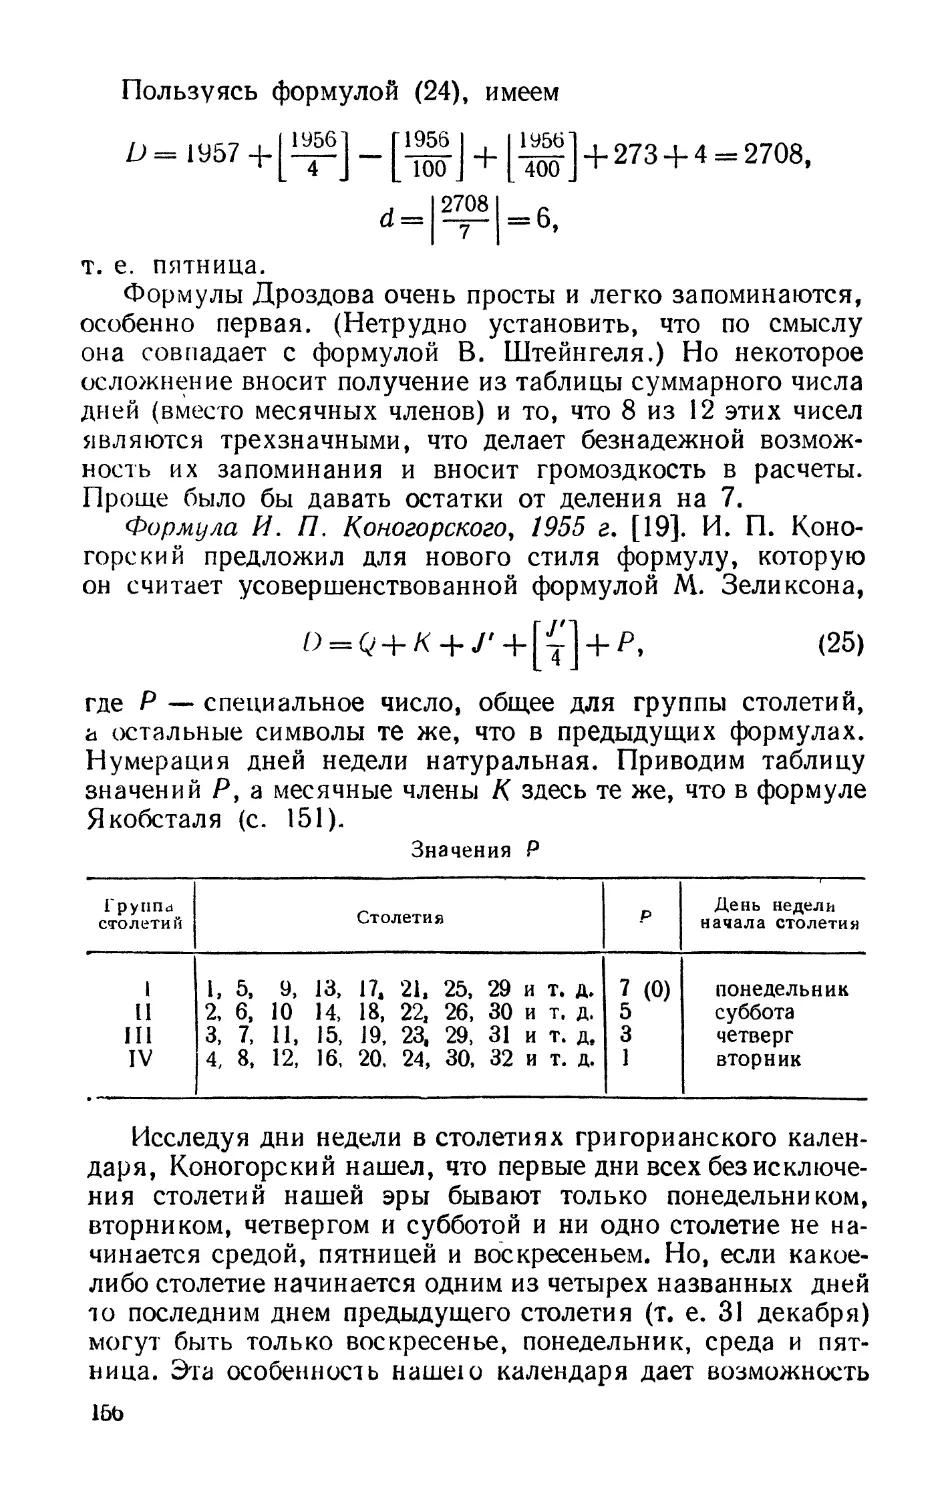 Формула И. П. Коногорского, 1955 г.